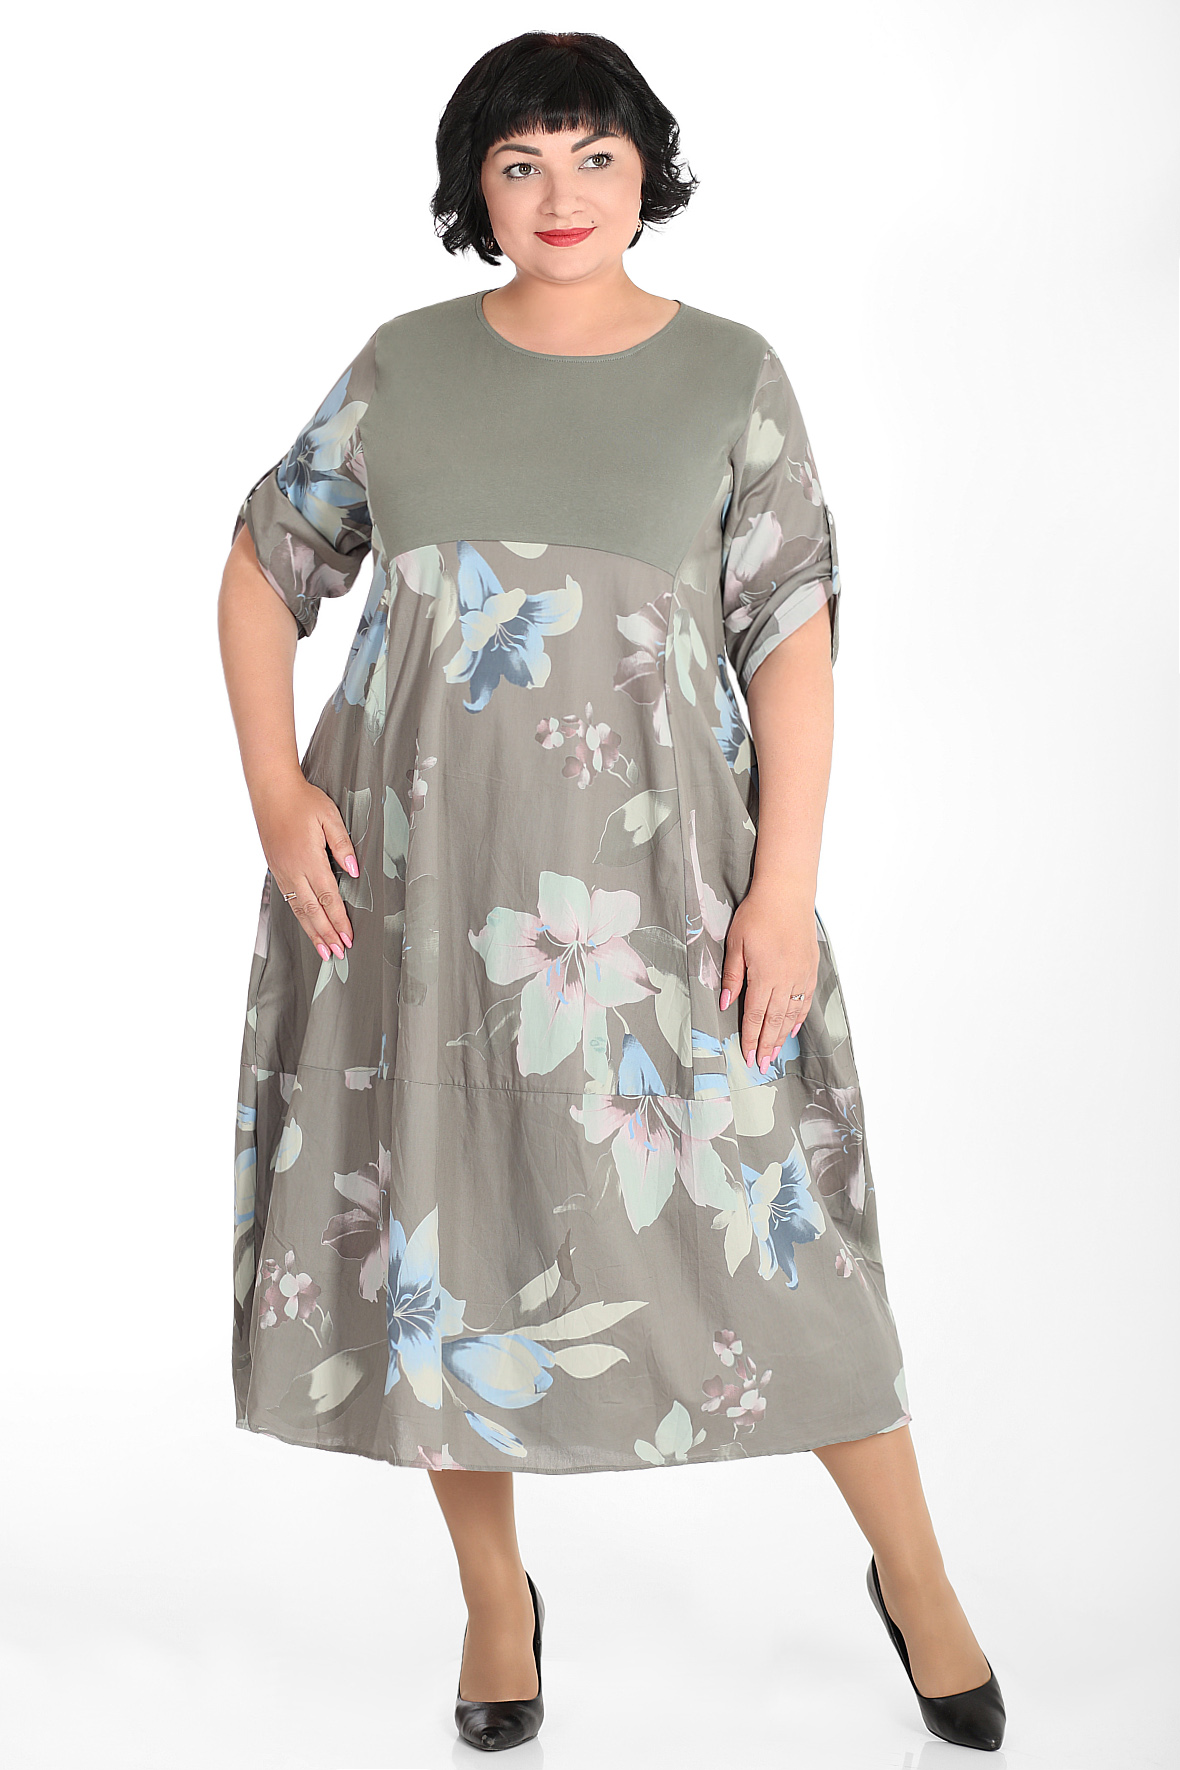 Платье женское AlmondShop З-18 165252.С1 зеленое 62 RU